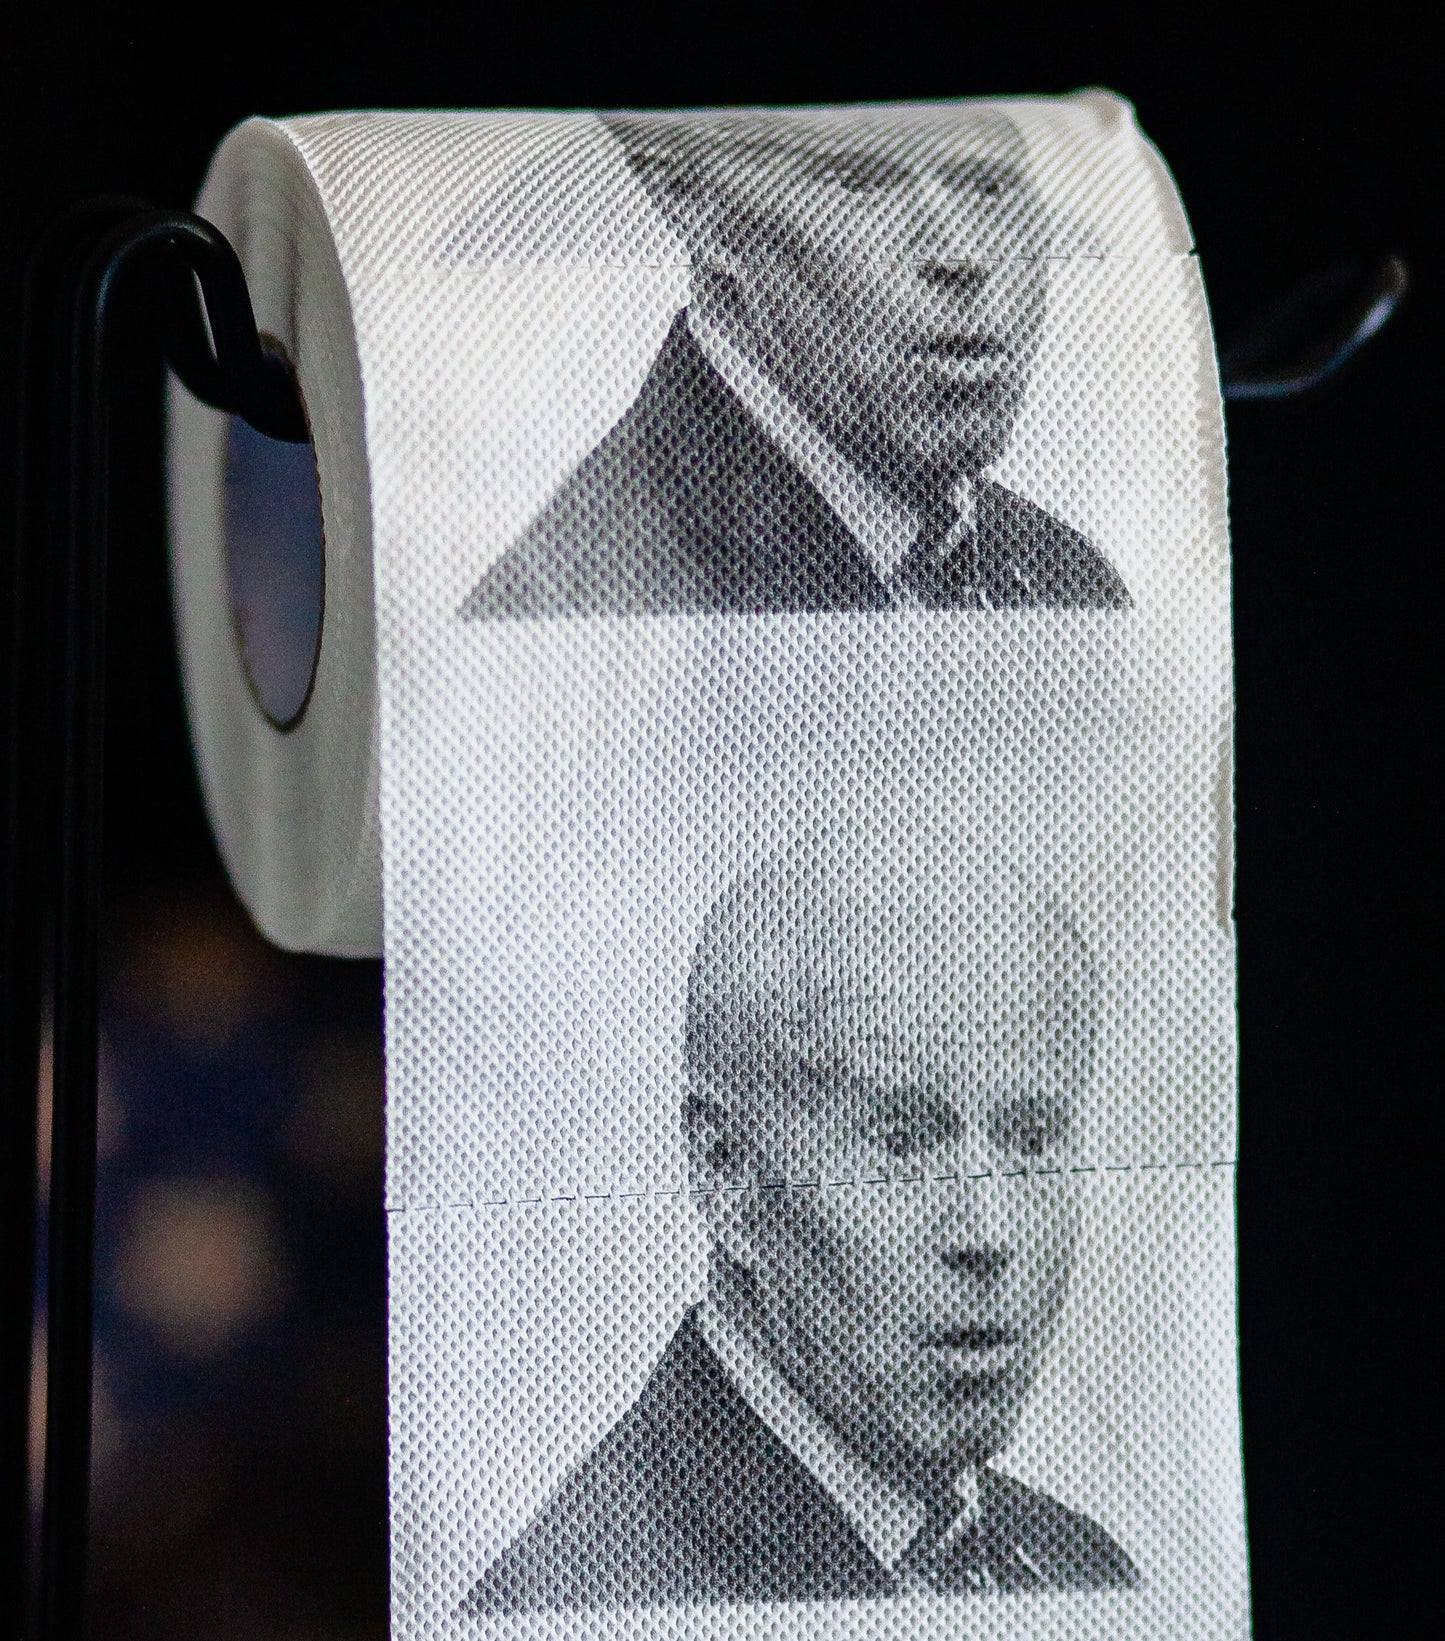 Sleepy Joe Biden Toilet Paper Rolls | 2-Pack